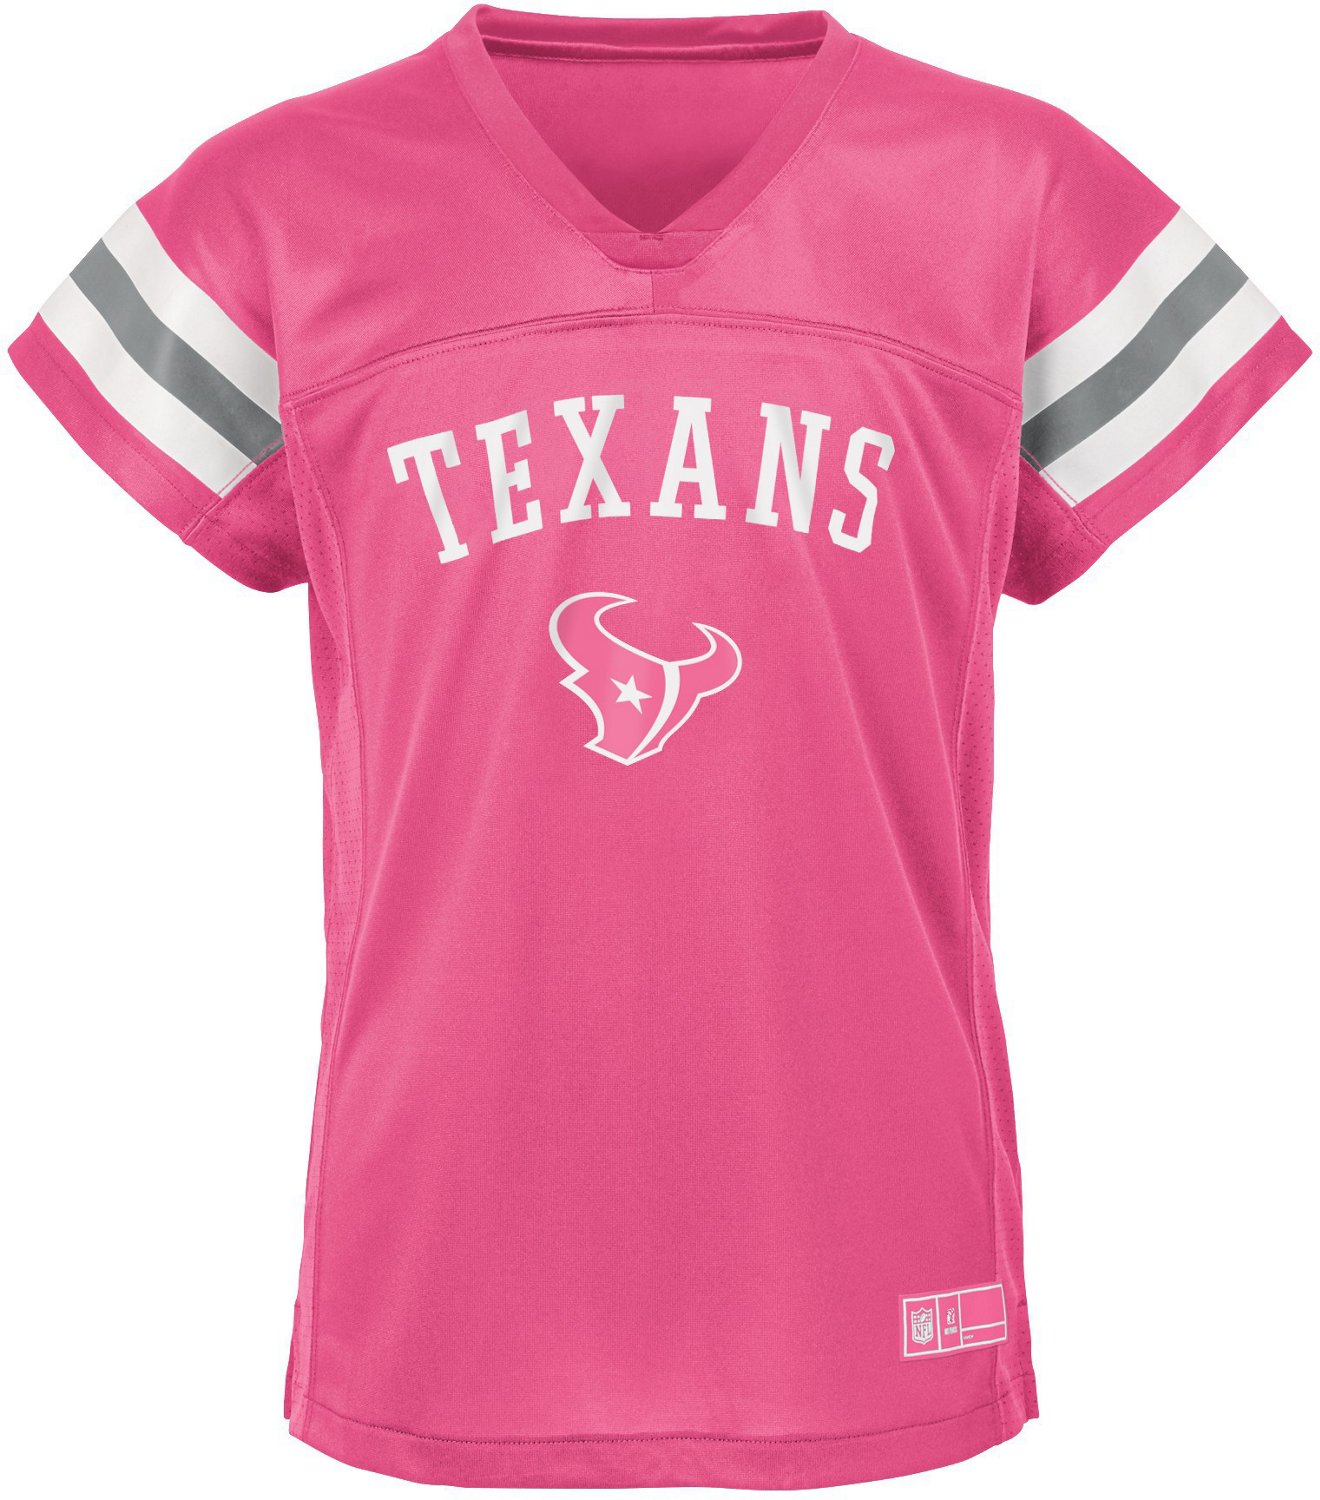 NFL Girls' Houston Texans Fashion Fan Gear Jersey